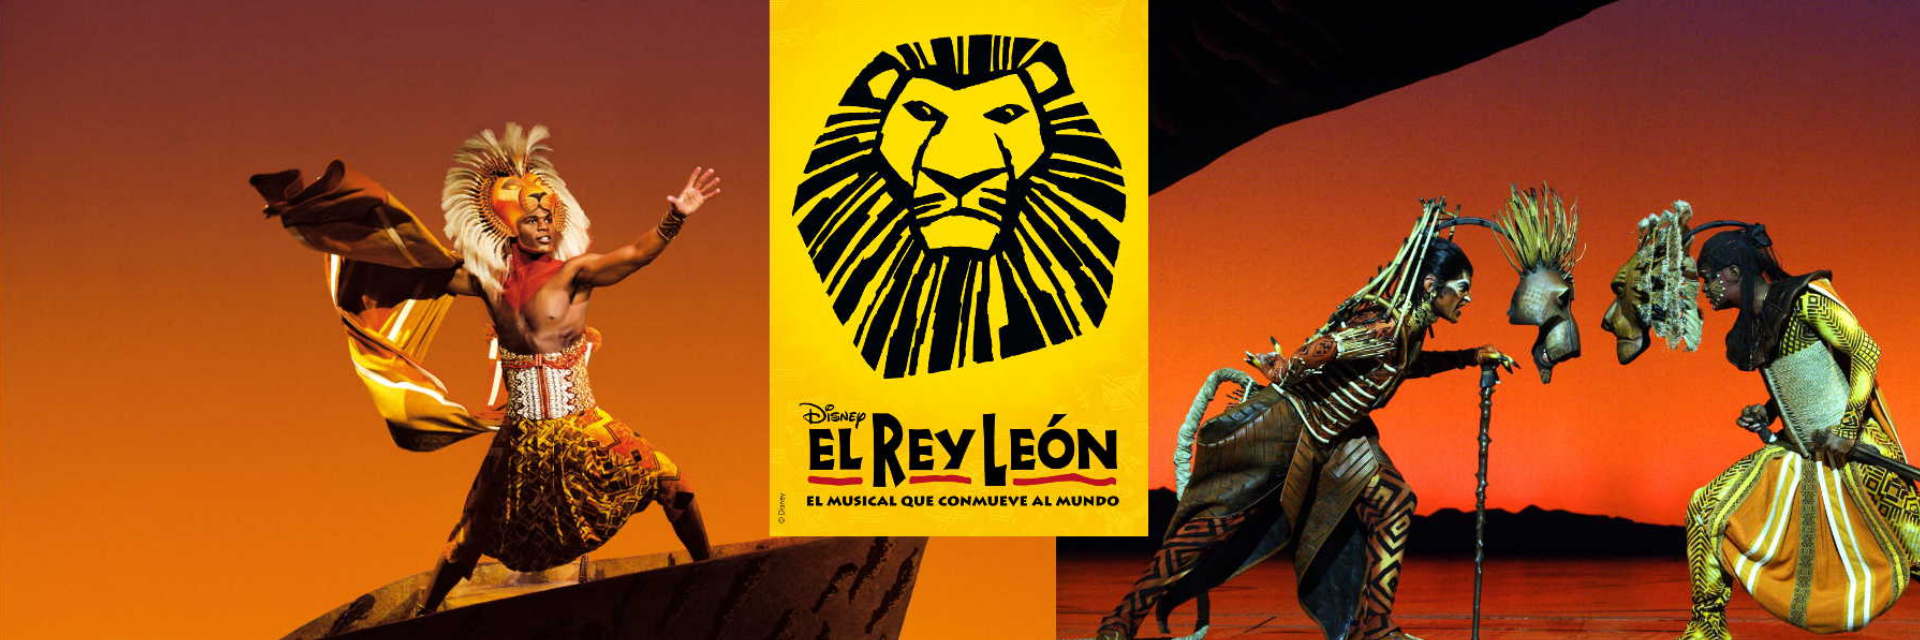 El Rey León banner